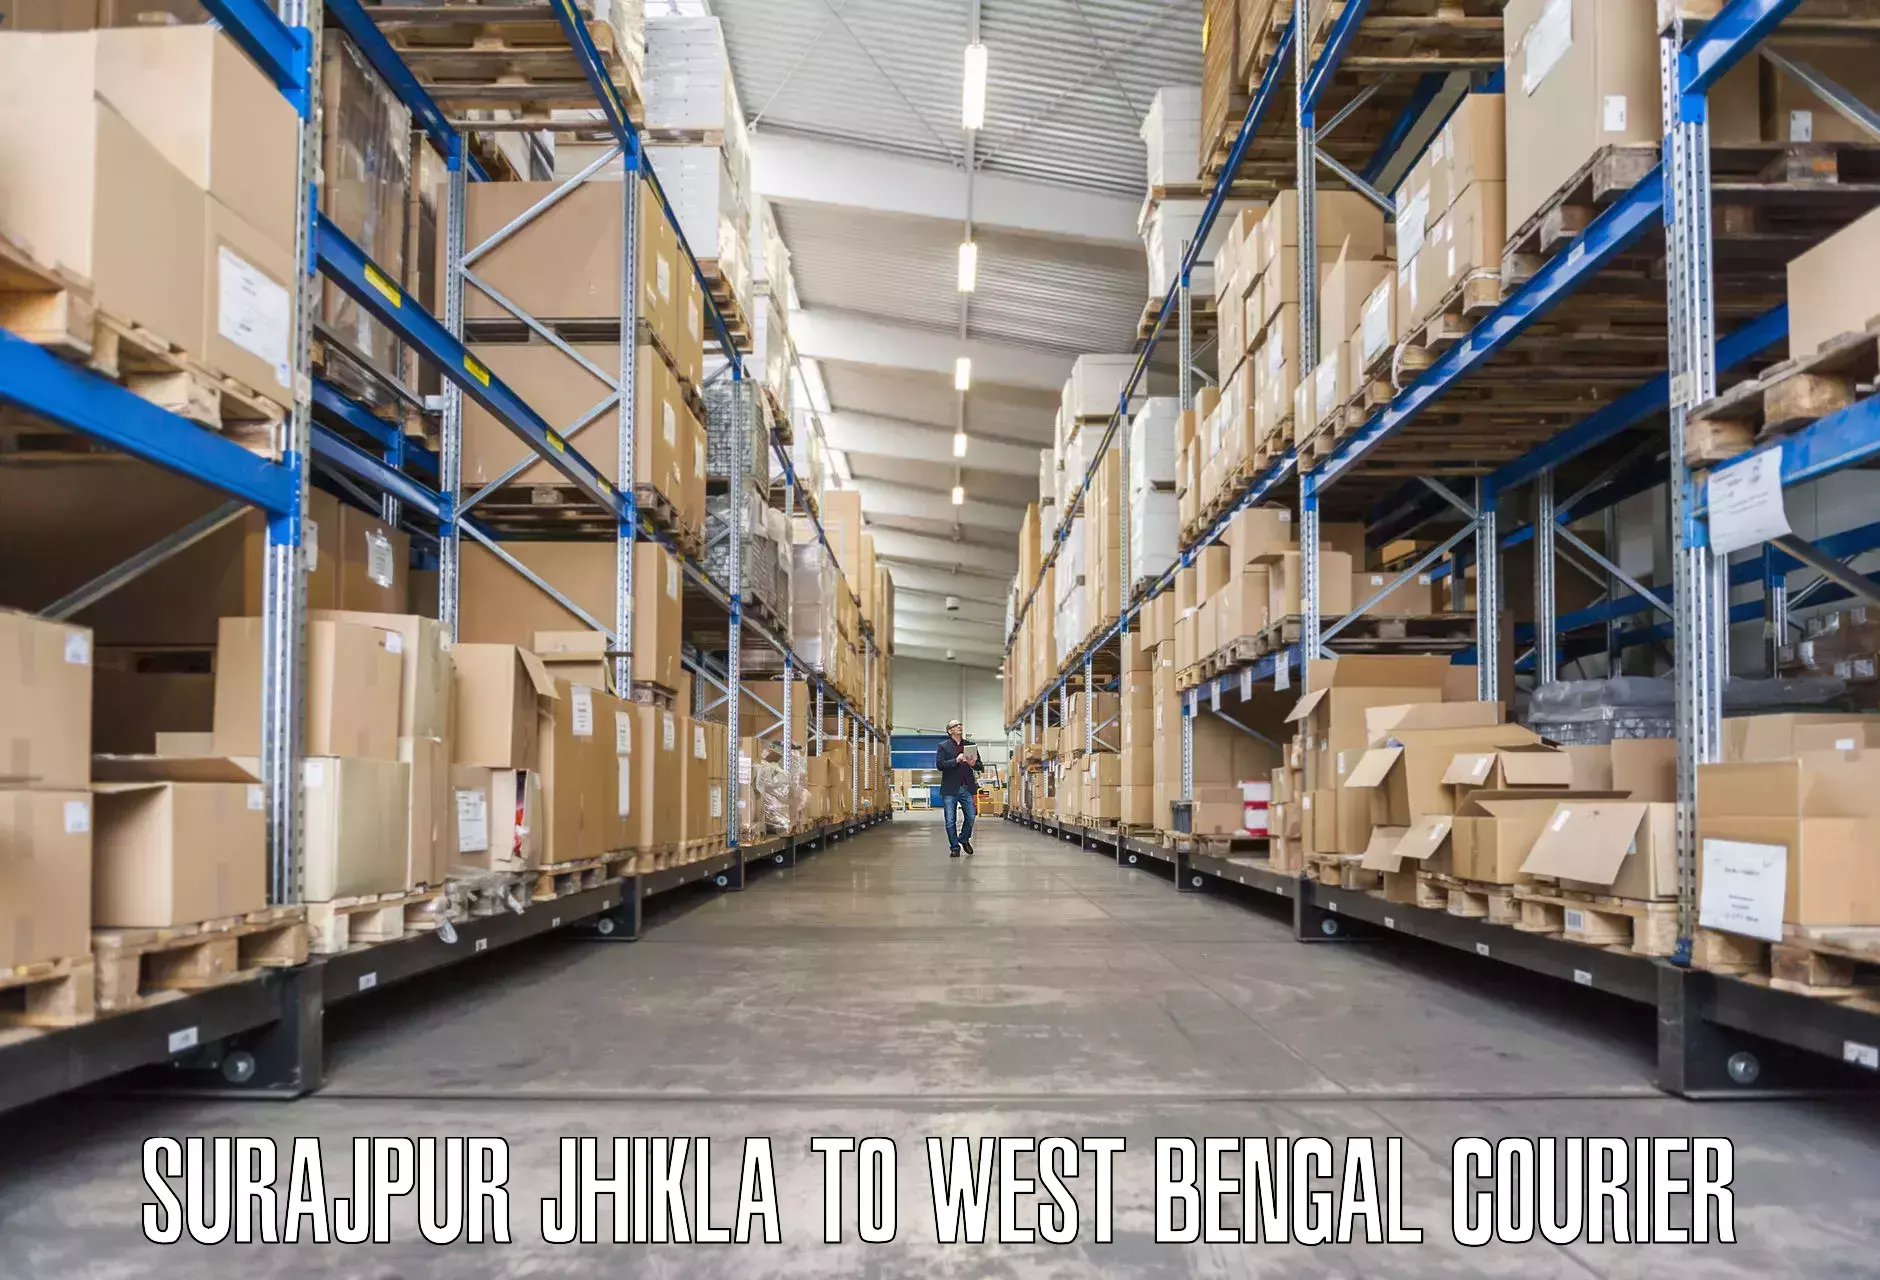 Furniture transport specialists Surajpur Jhikla to Maynaguri